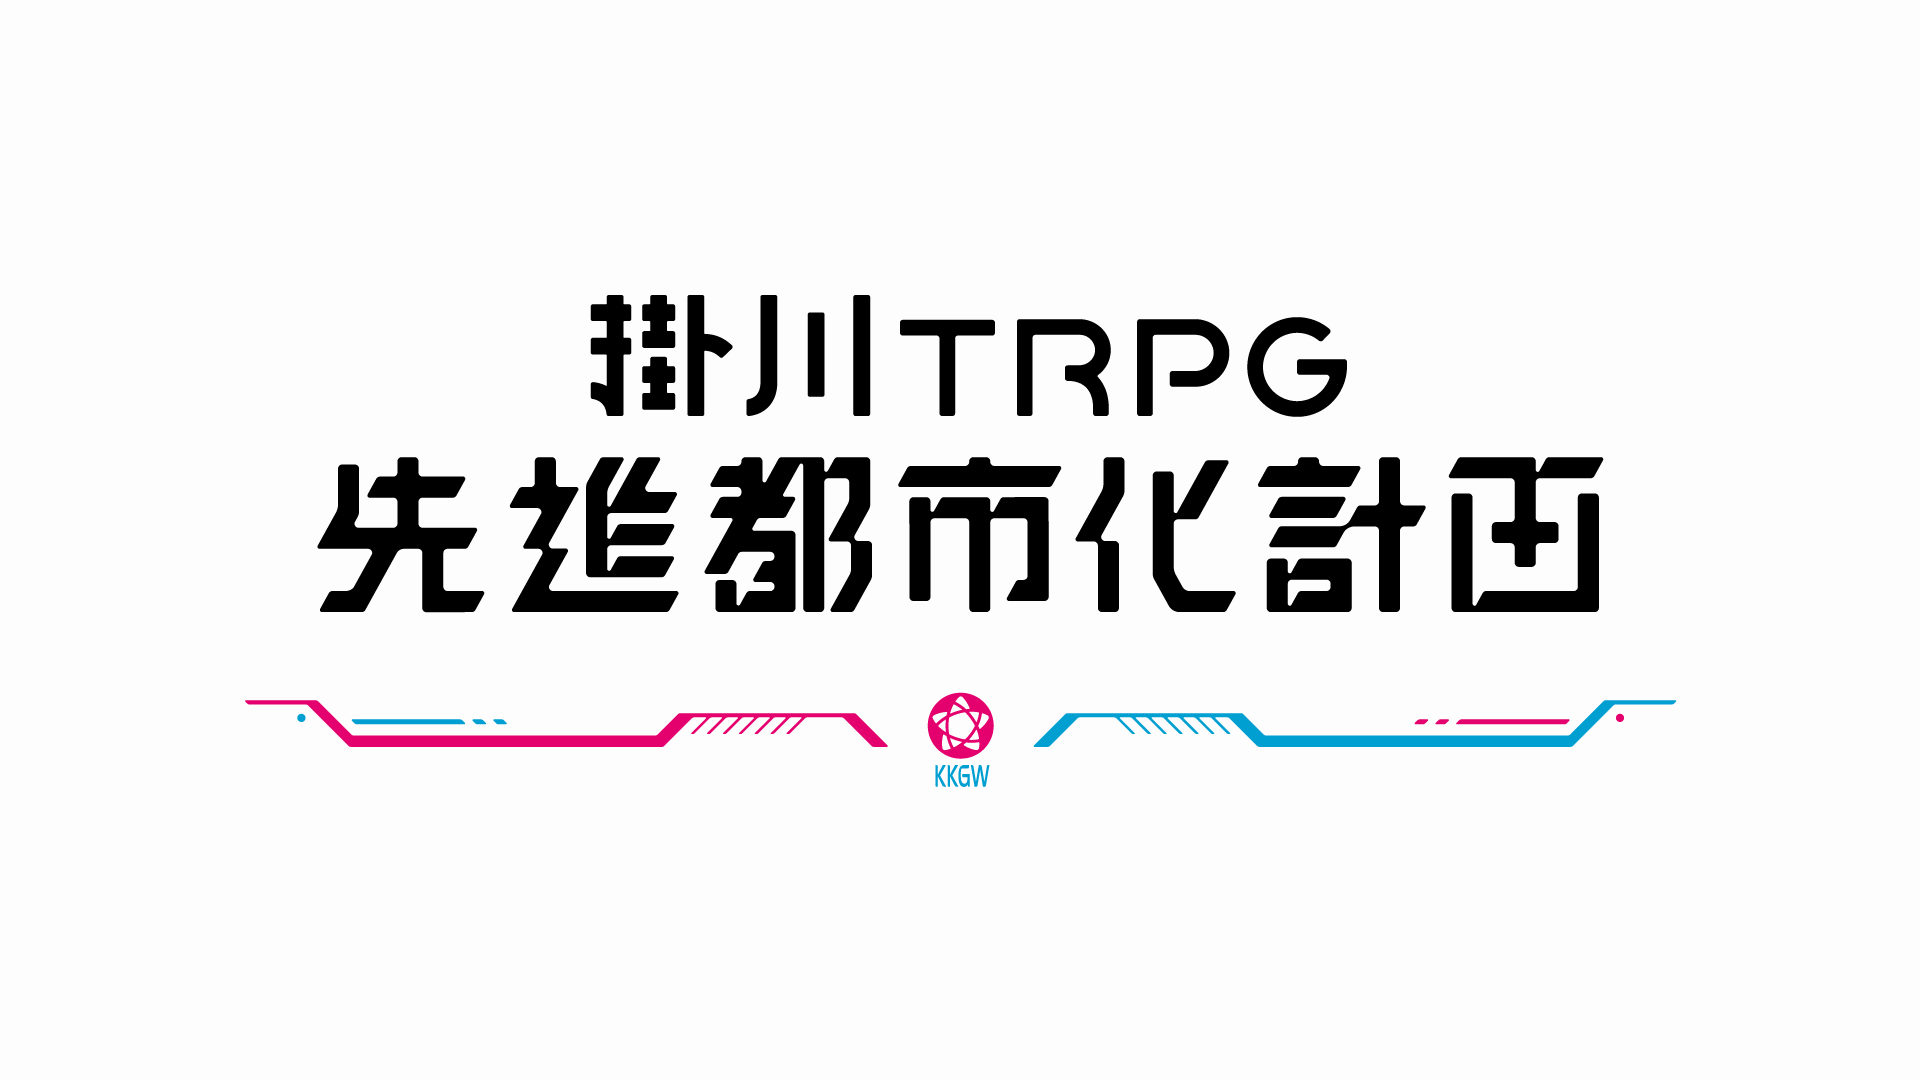 掛川TRPG先進都市化計画